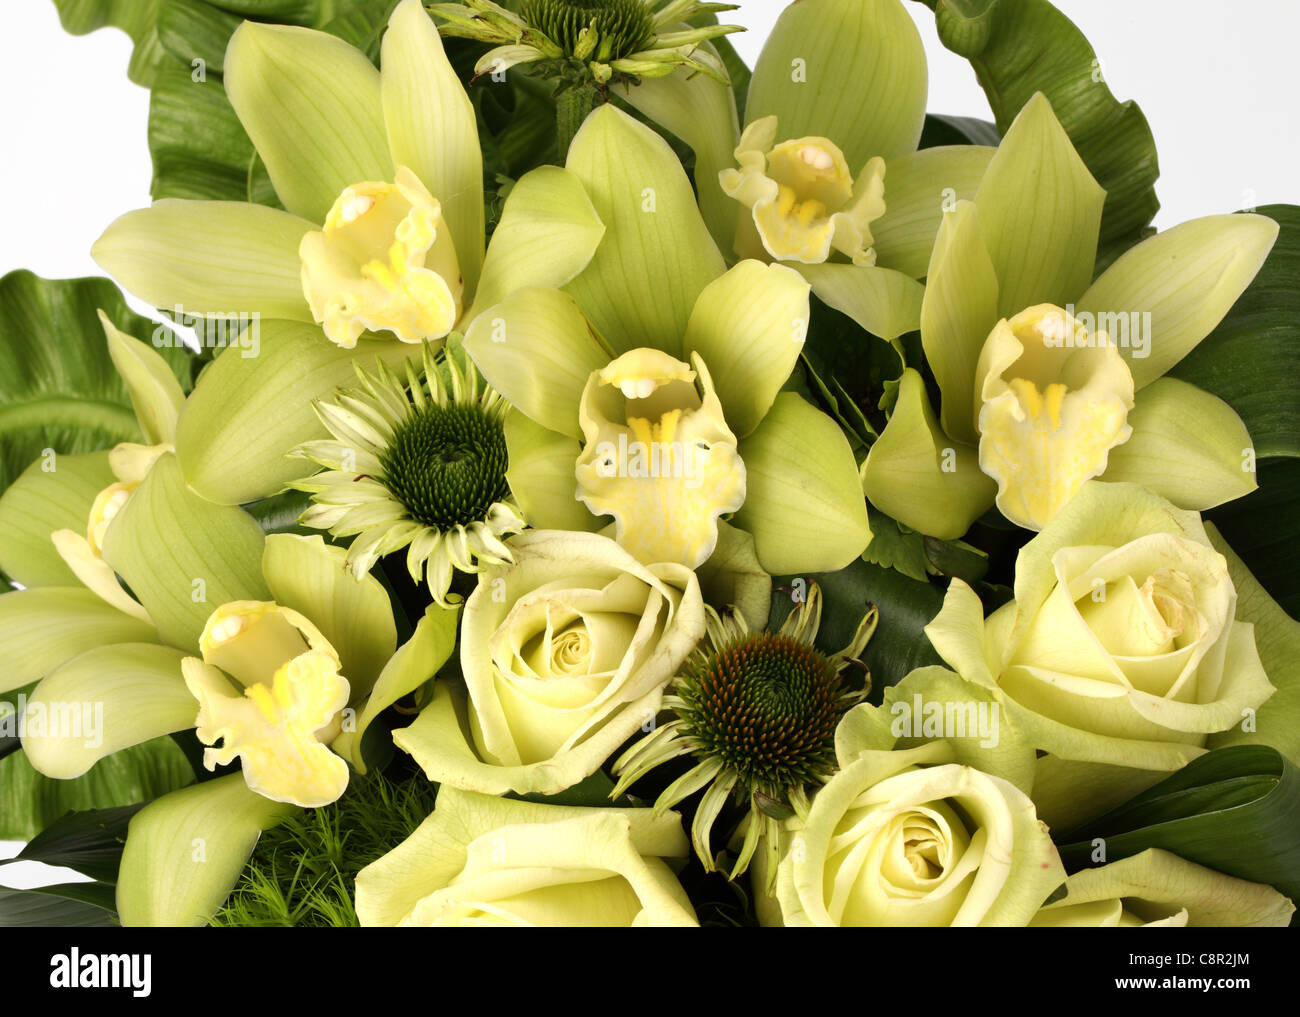 Eine Nahaufnahme von einem bunten Blumenstrauß. Cremefarbene Rosen, Kegel Blumen [Echinacea], Orchideen [Cymbidium] Stockfoto